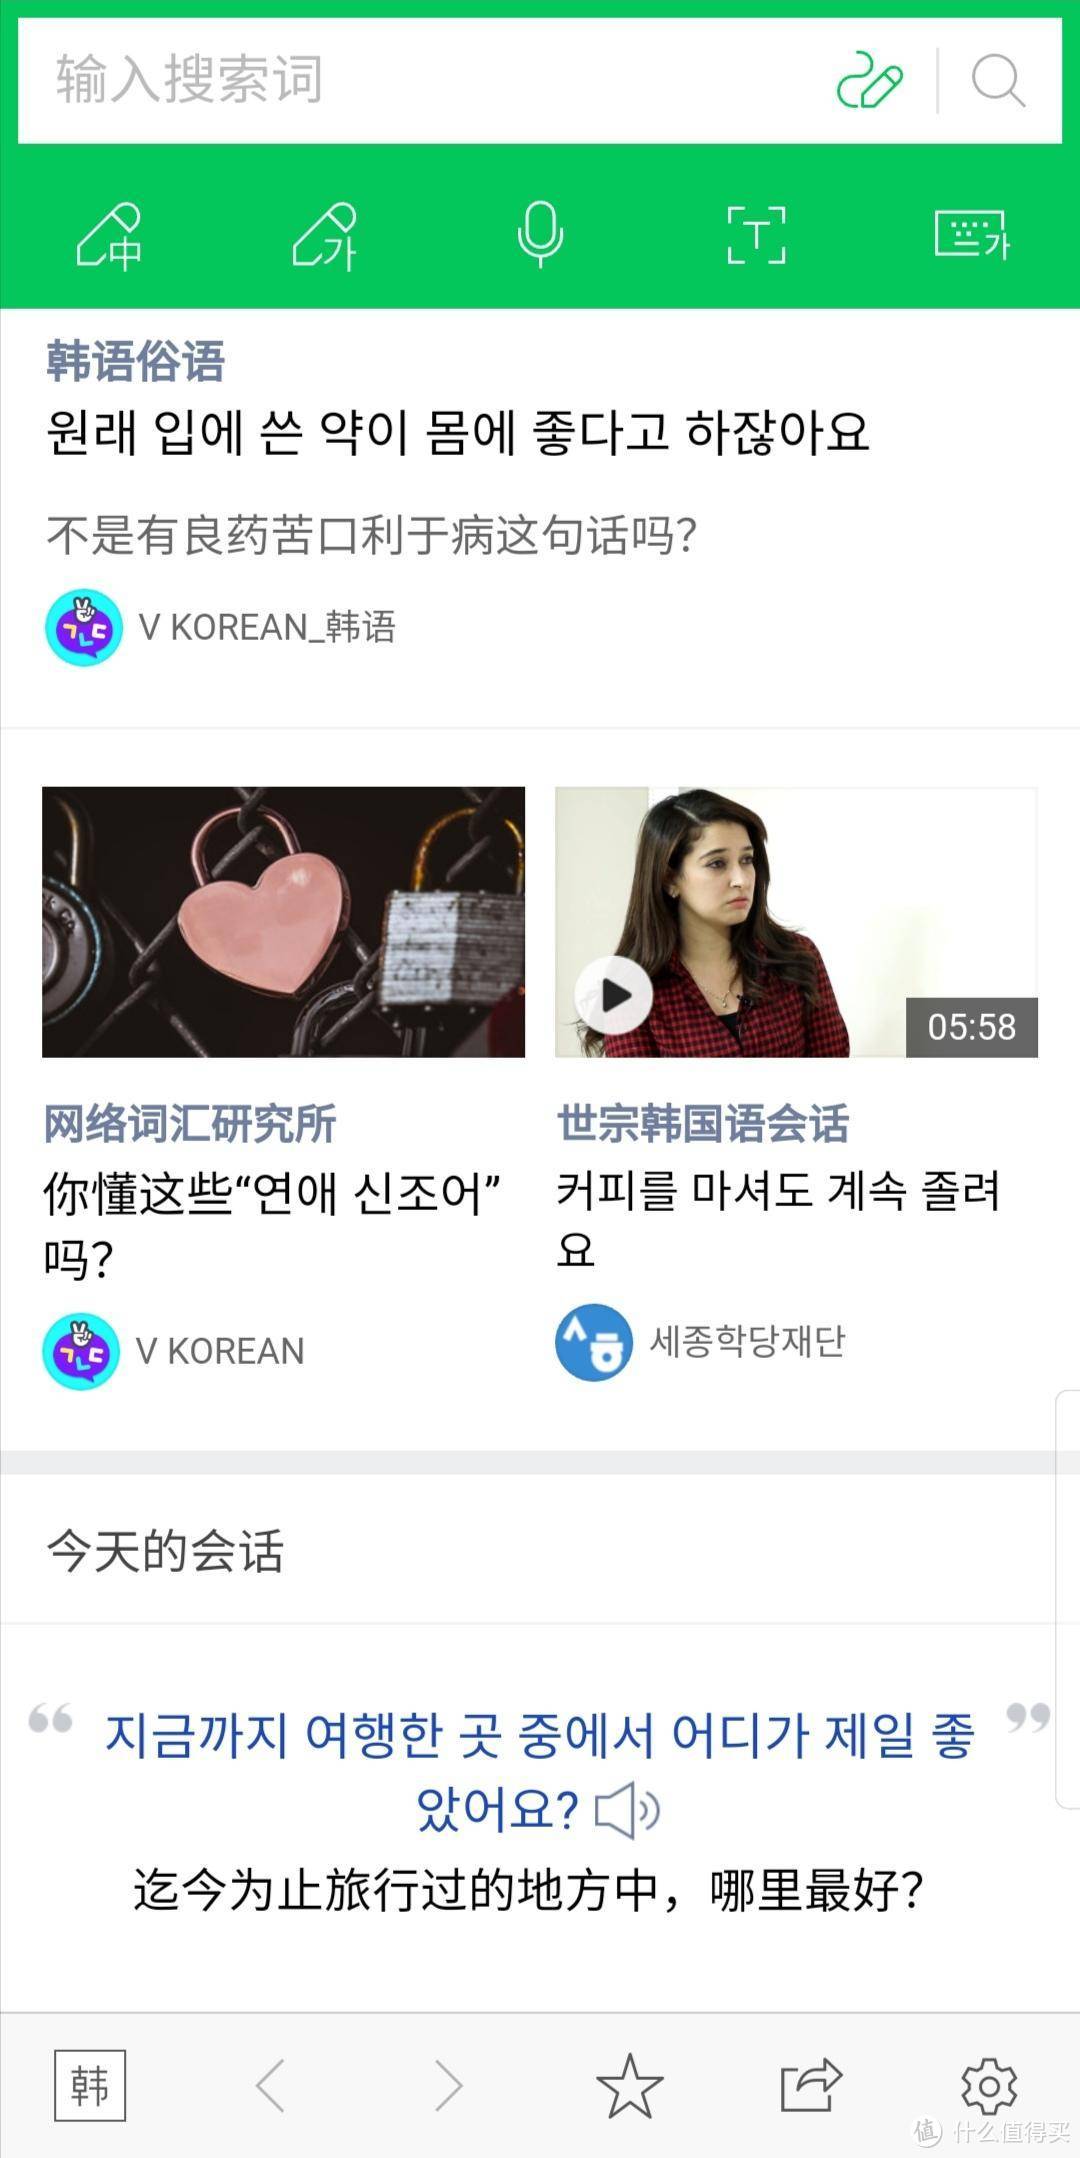 韩语发音学习必读，教材、app、b站结合推荐